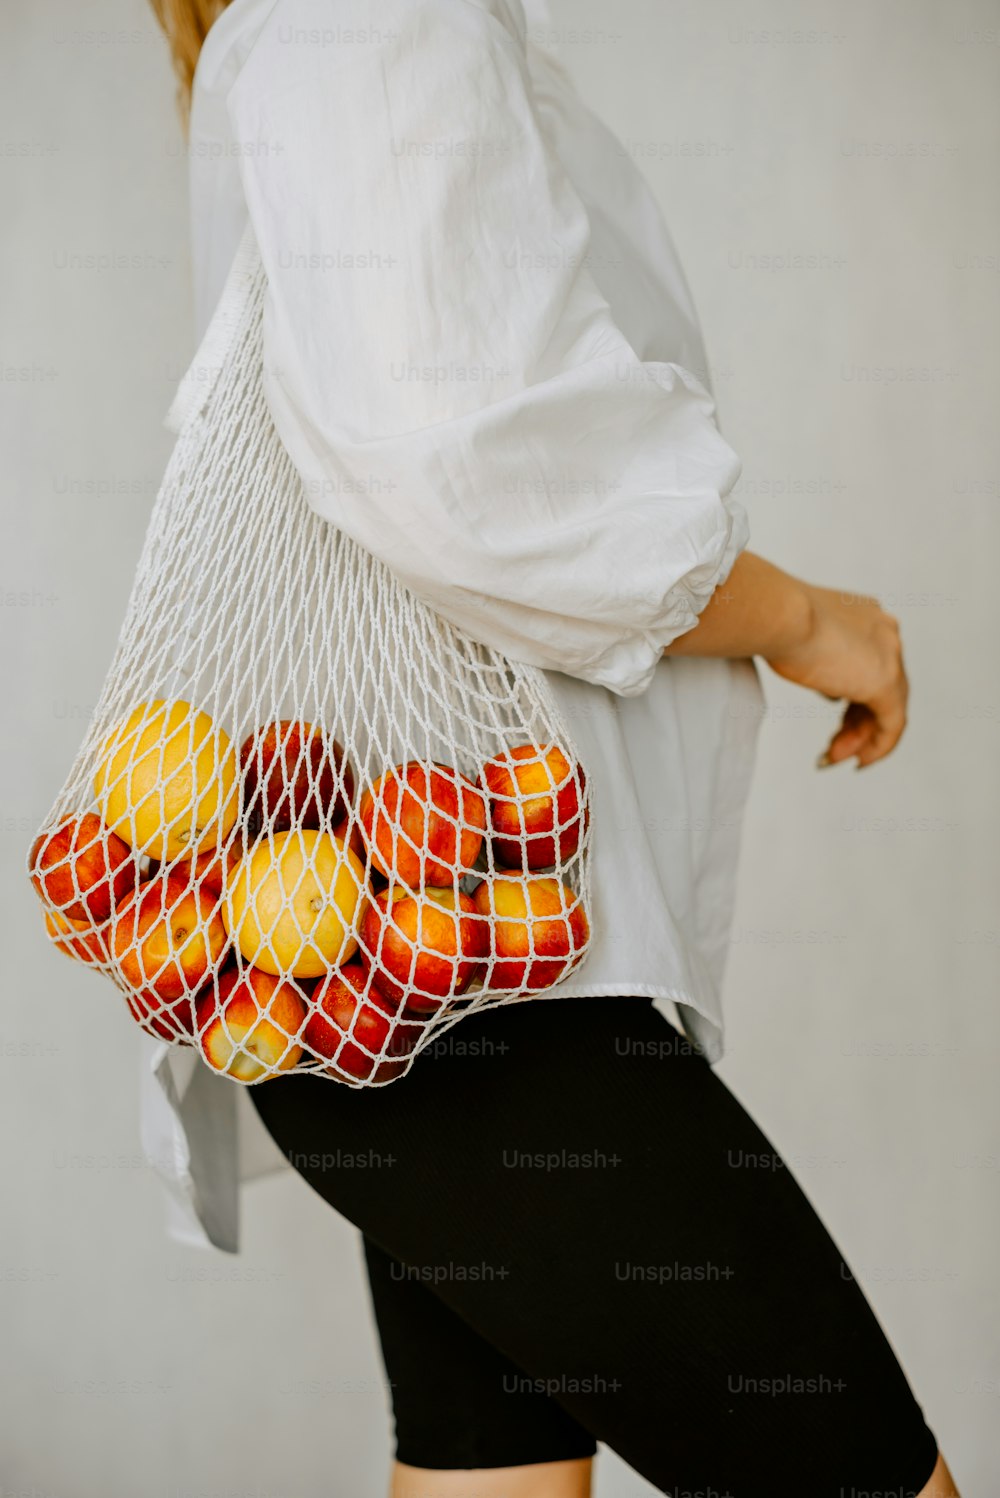 Une femme portant un sac en filet rempli d’oranges